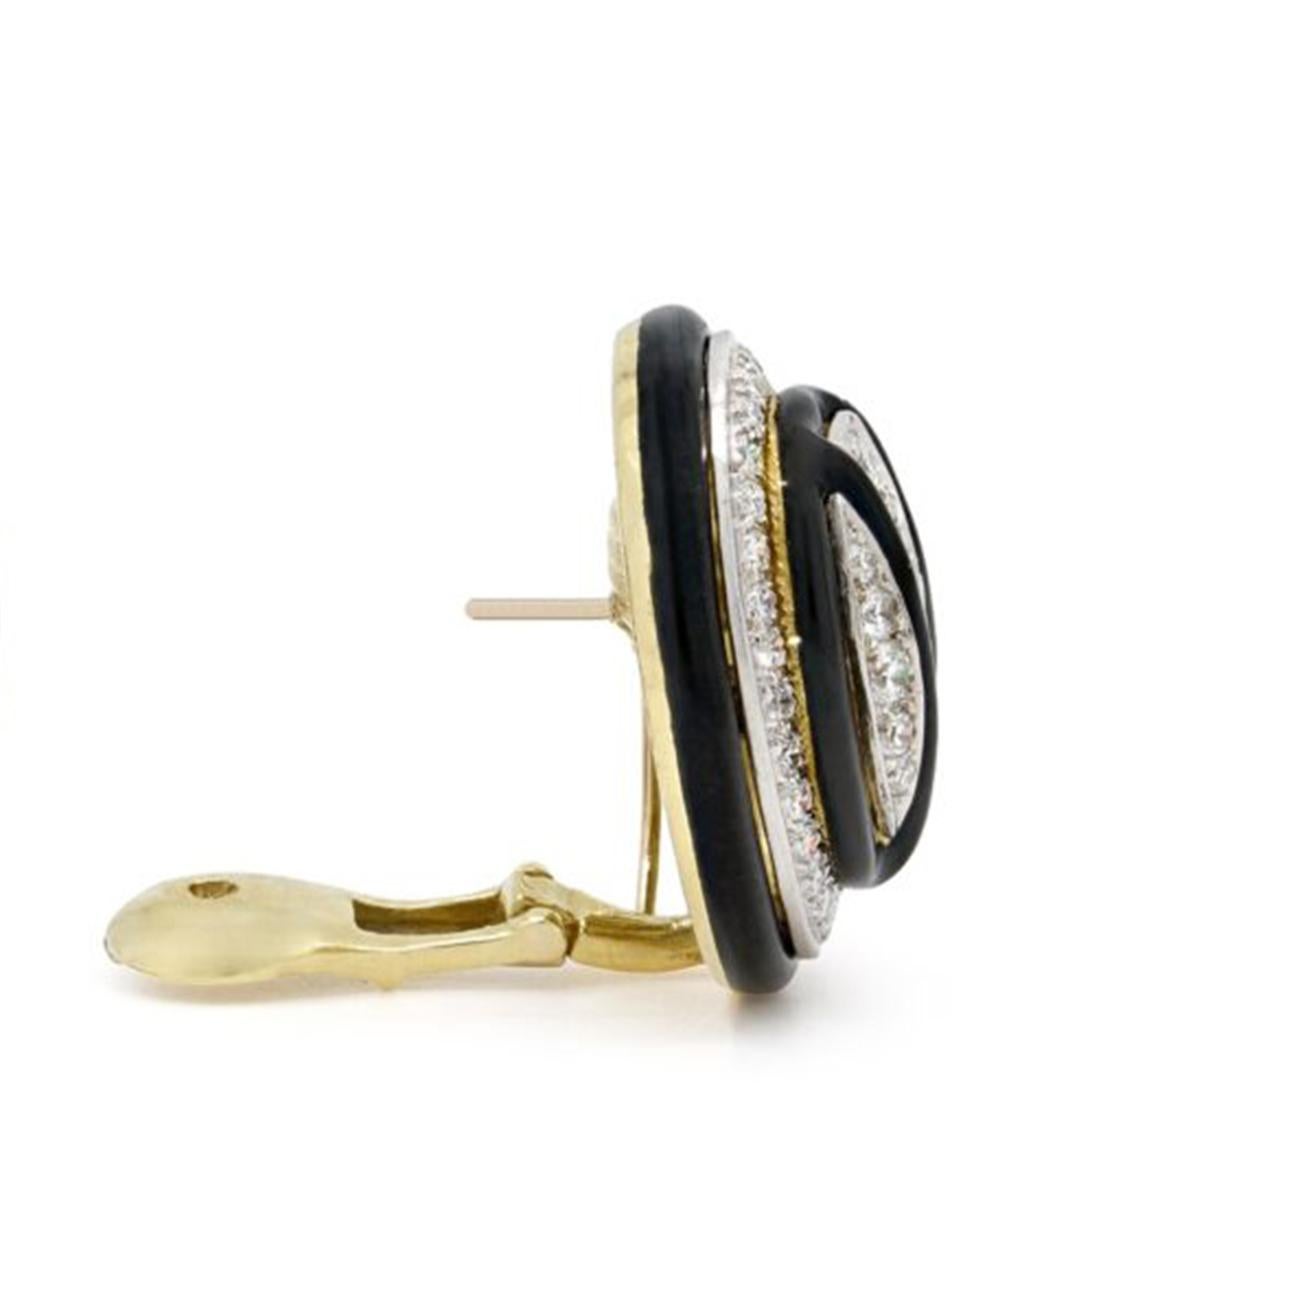 Brilliant Cut Diamond and Black Enamel Oval Earrings by David Webb